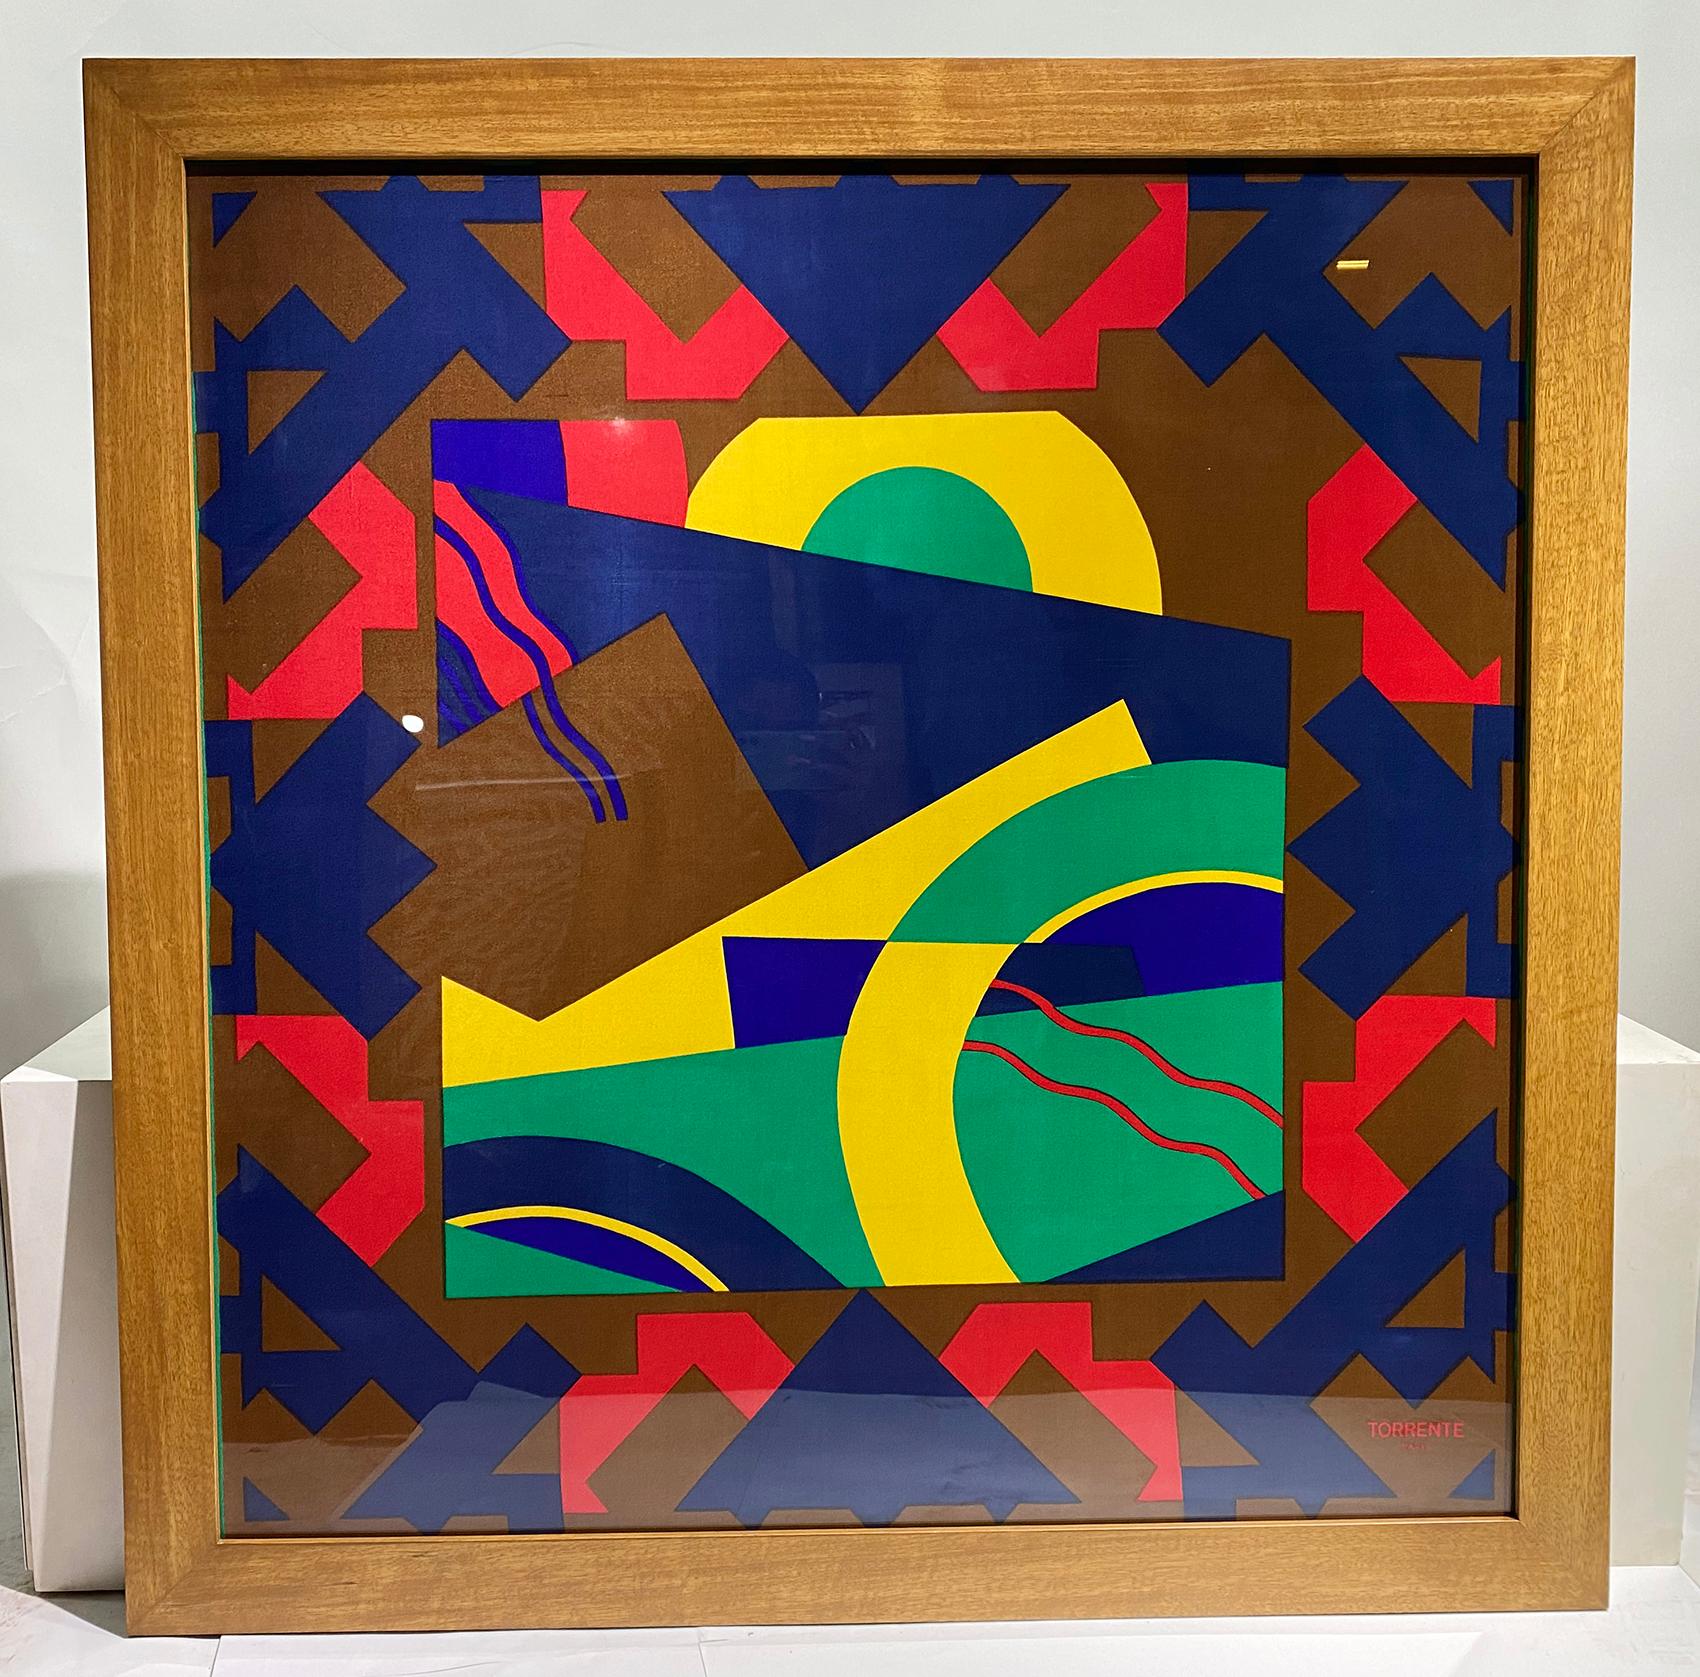 Rare, écharpe en soie TORRENTE-PARIS encadrée, avec des formes géométriques colorées, en rouge, bleu, jaune et vert sur un fond marron.
Dans un cadre en bois.
Ayant une signature 